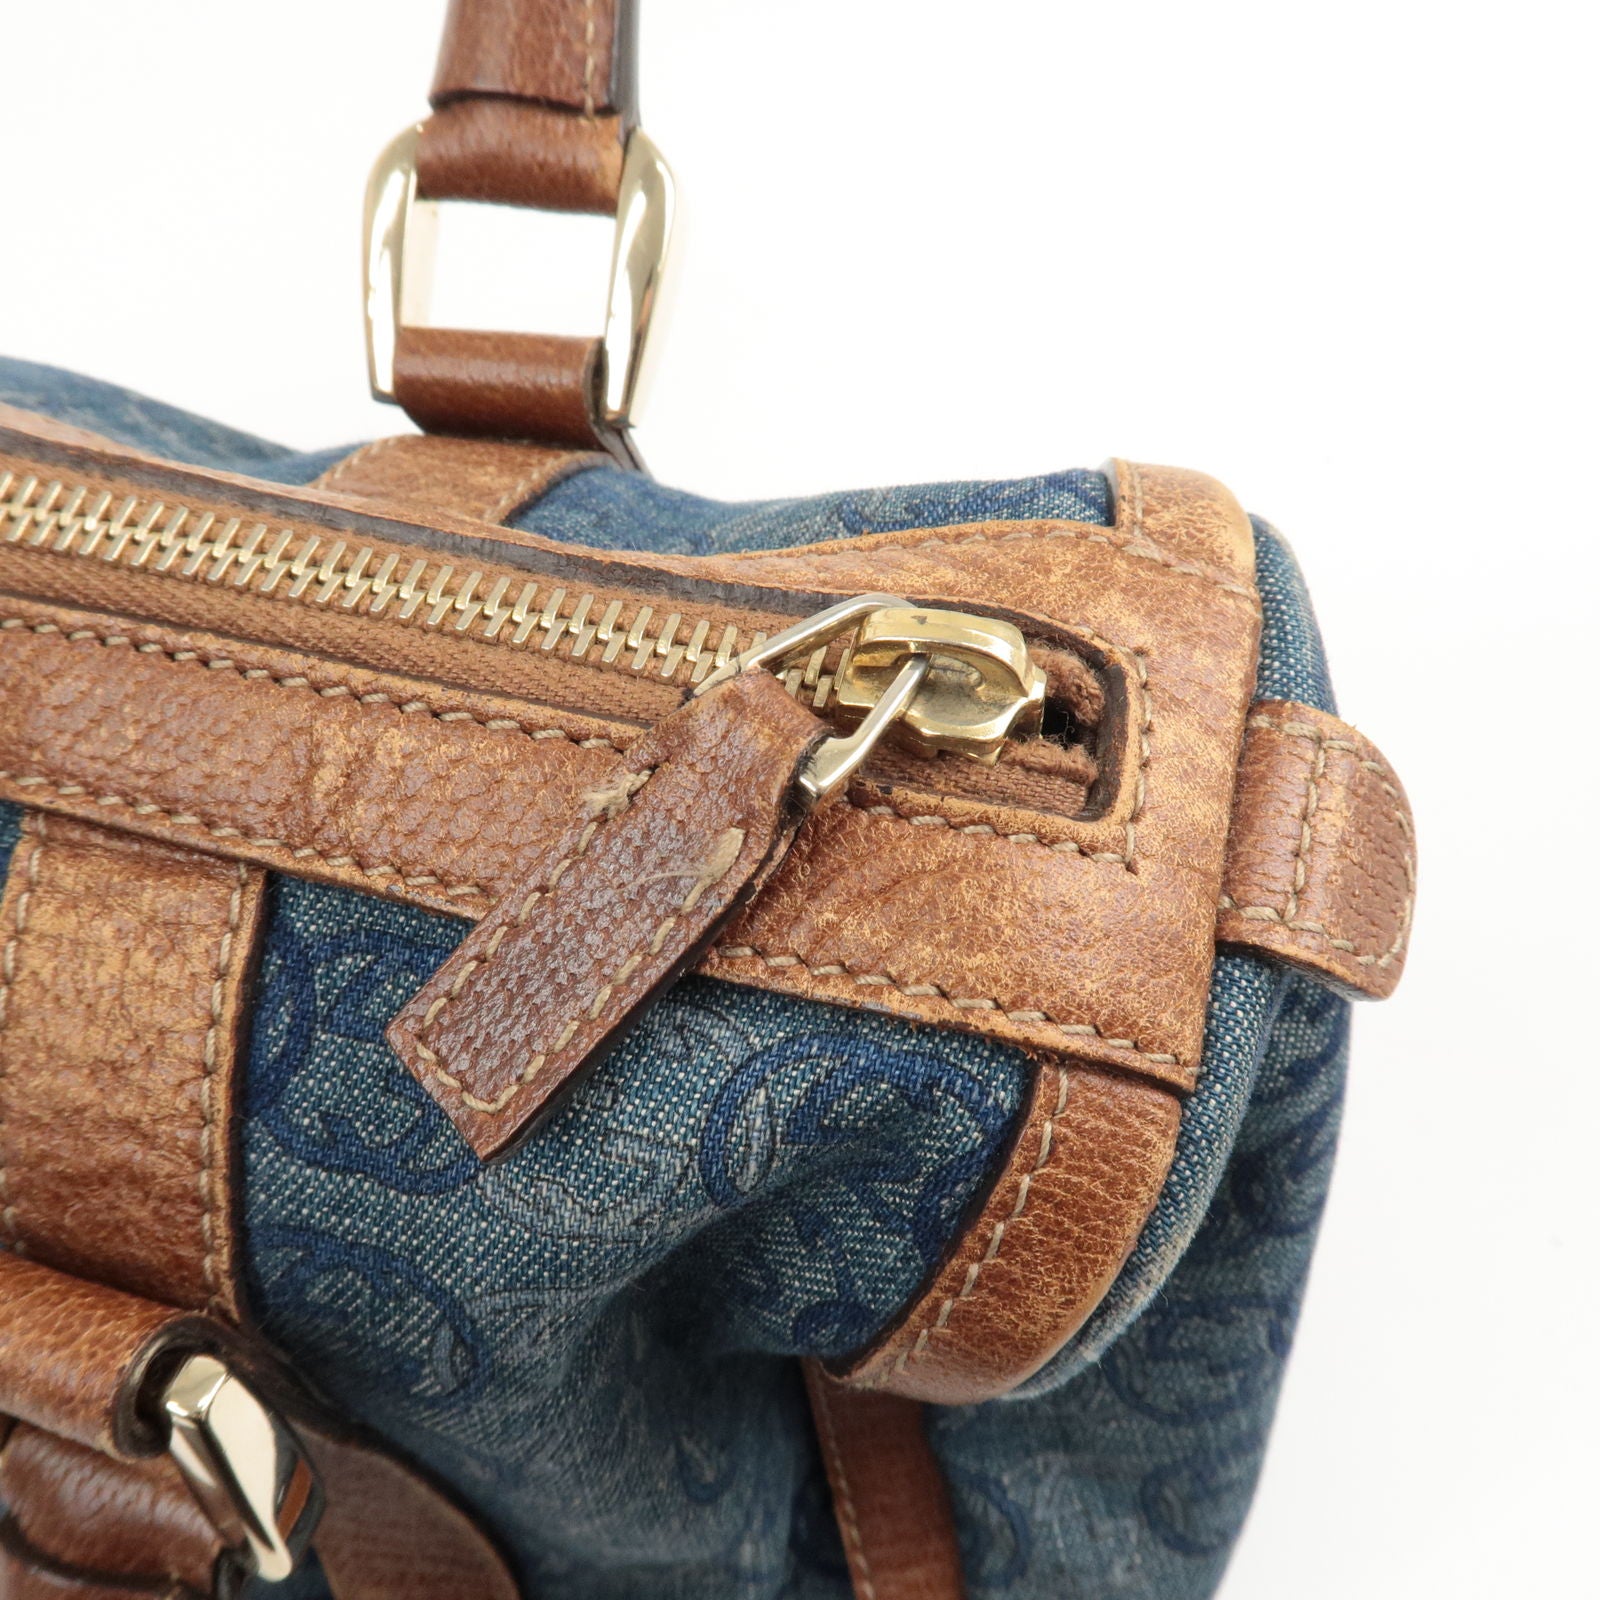 Brown Gucci Guccissima Abbey Leather Boston Bag – Designer Revival